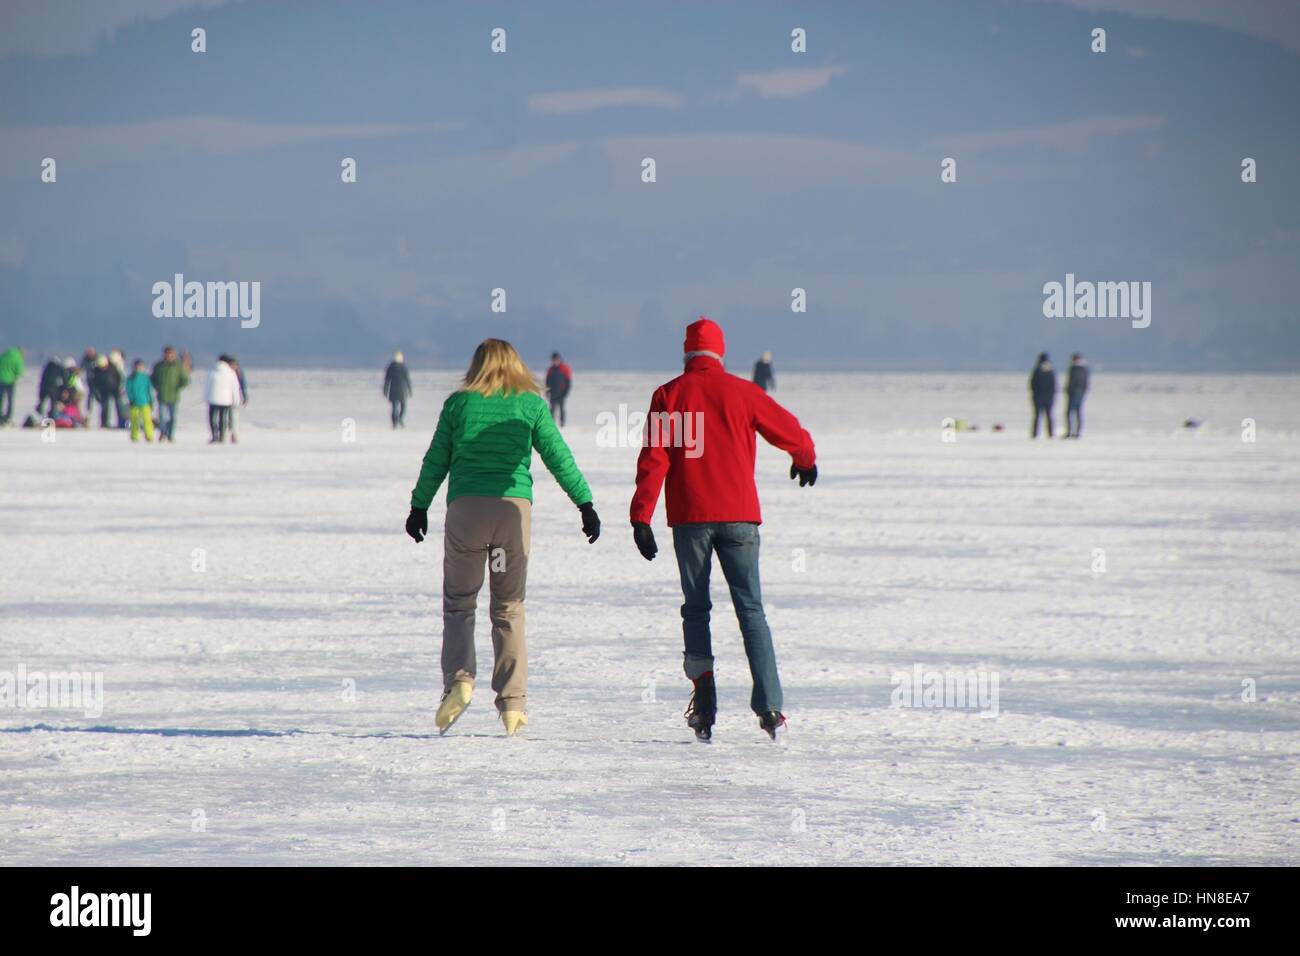 Ein paar ist auf dem Eis Schlittschuhlaufen. Auf dem gefrorenen See Wallersee in Seekirchen, Salzburger Land, Österreich, Europa. Stockfoto